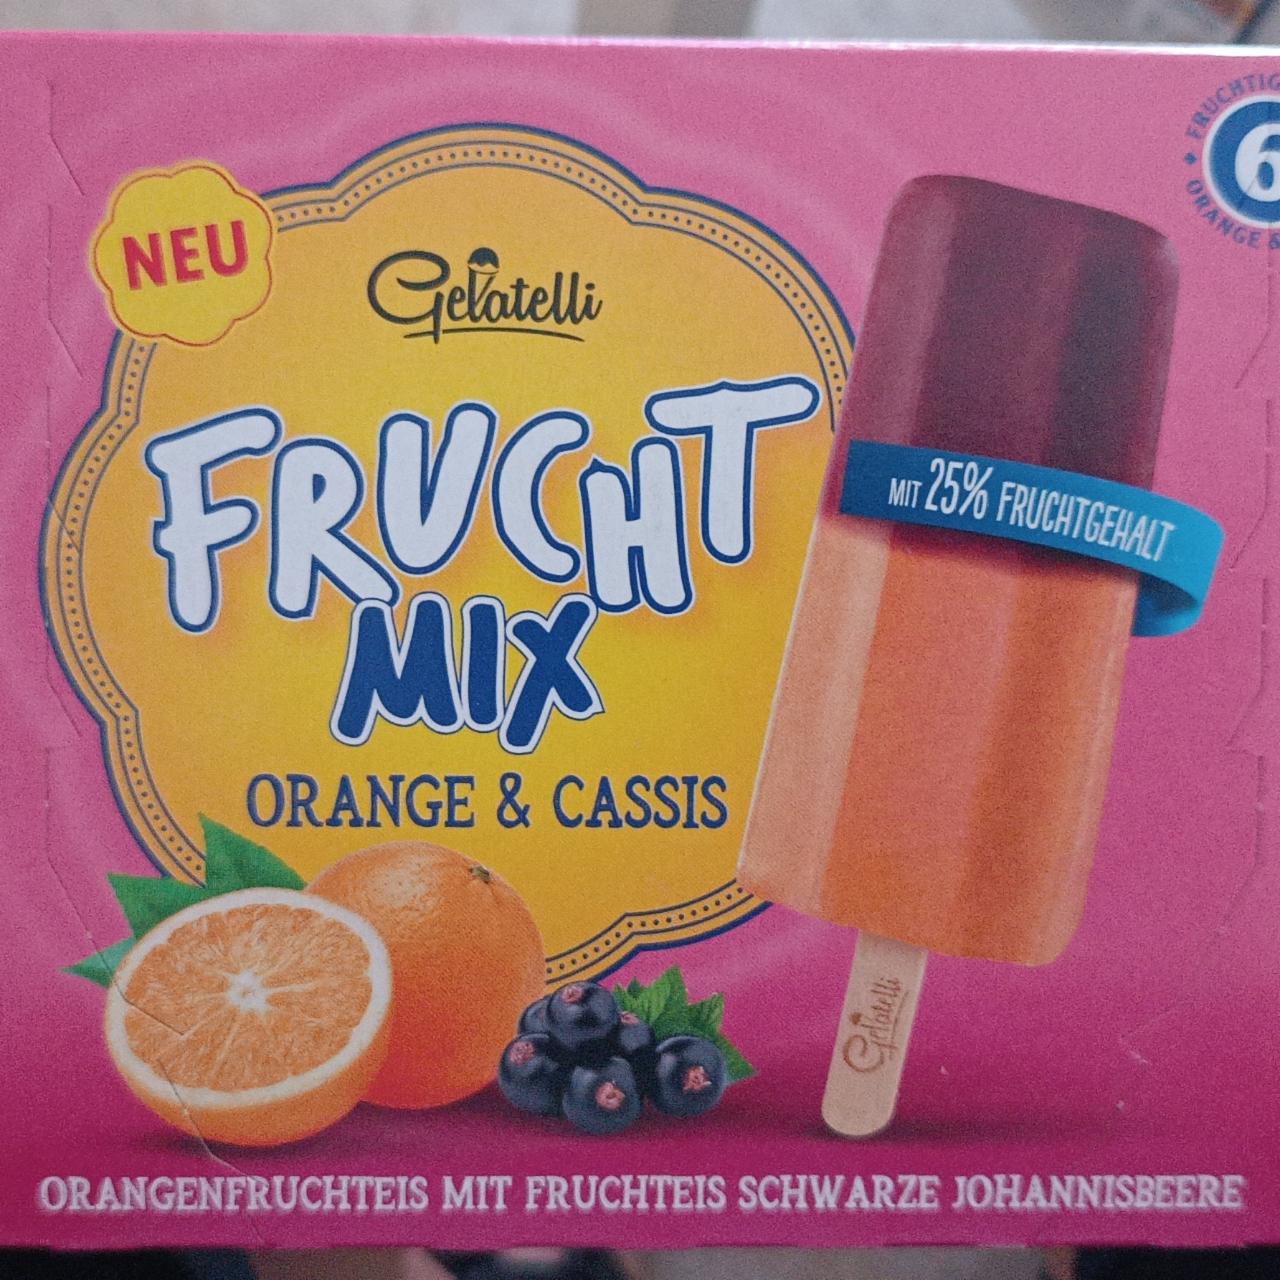 Fotografie - Frucht mix Orange & Cassis Gelatelli